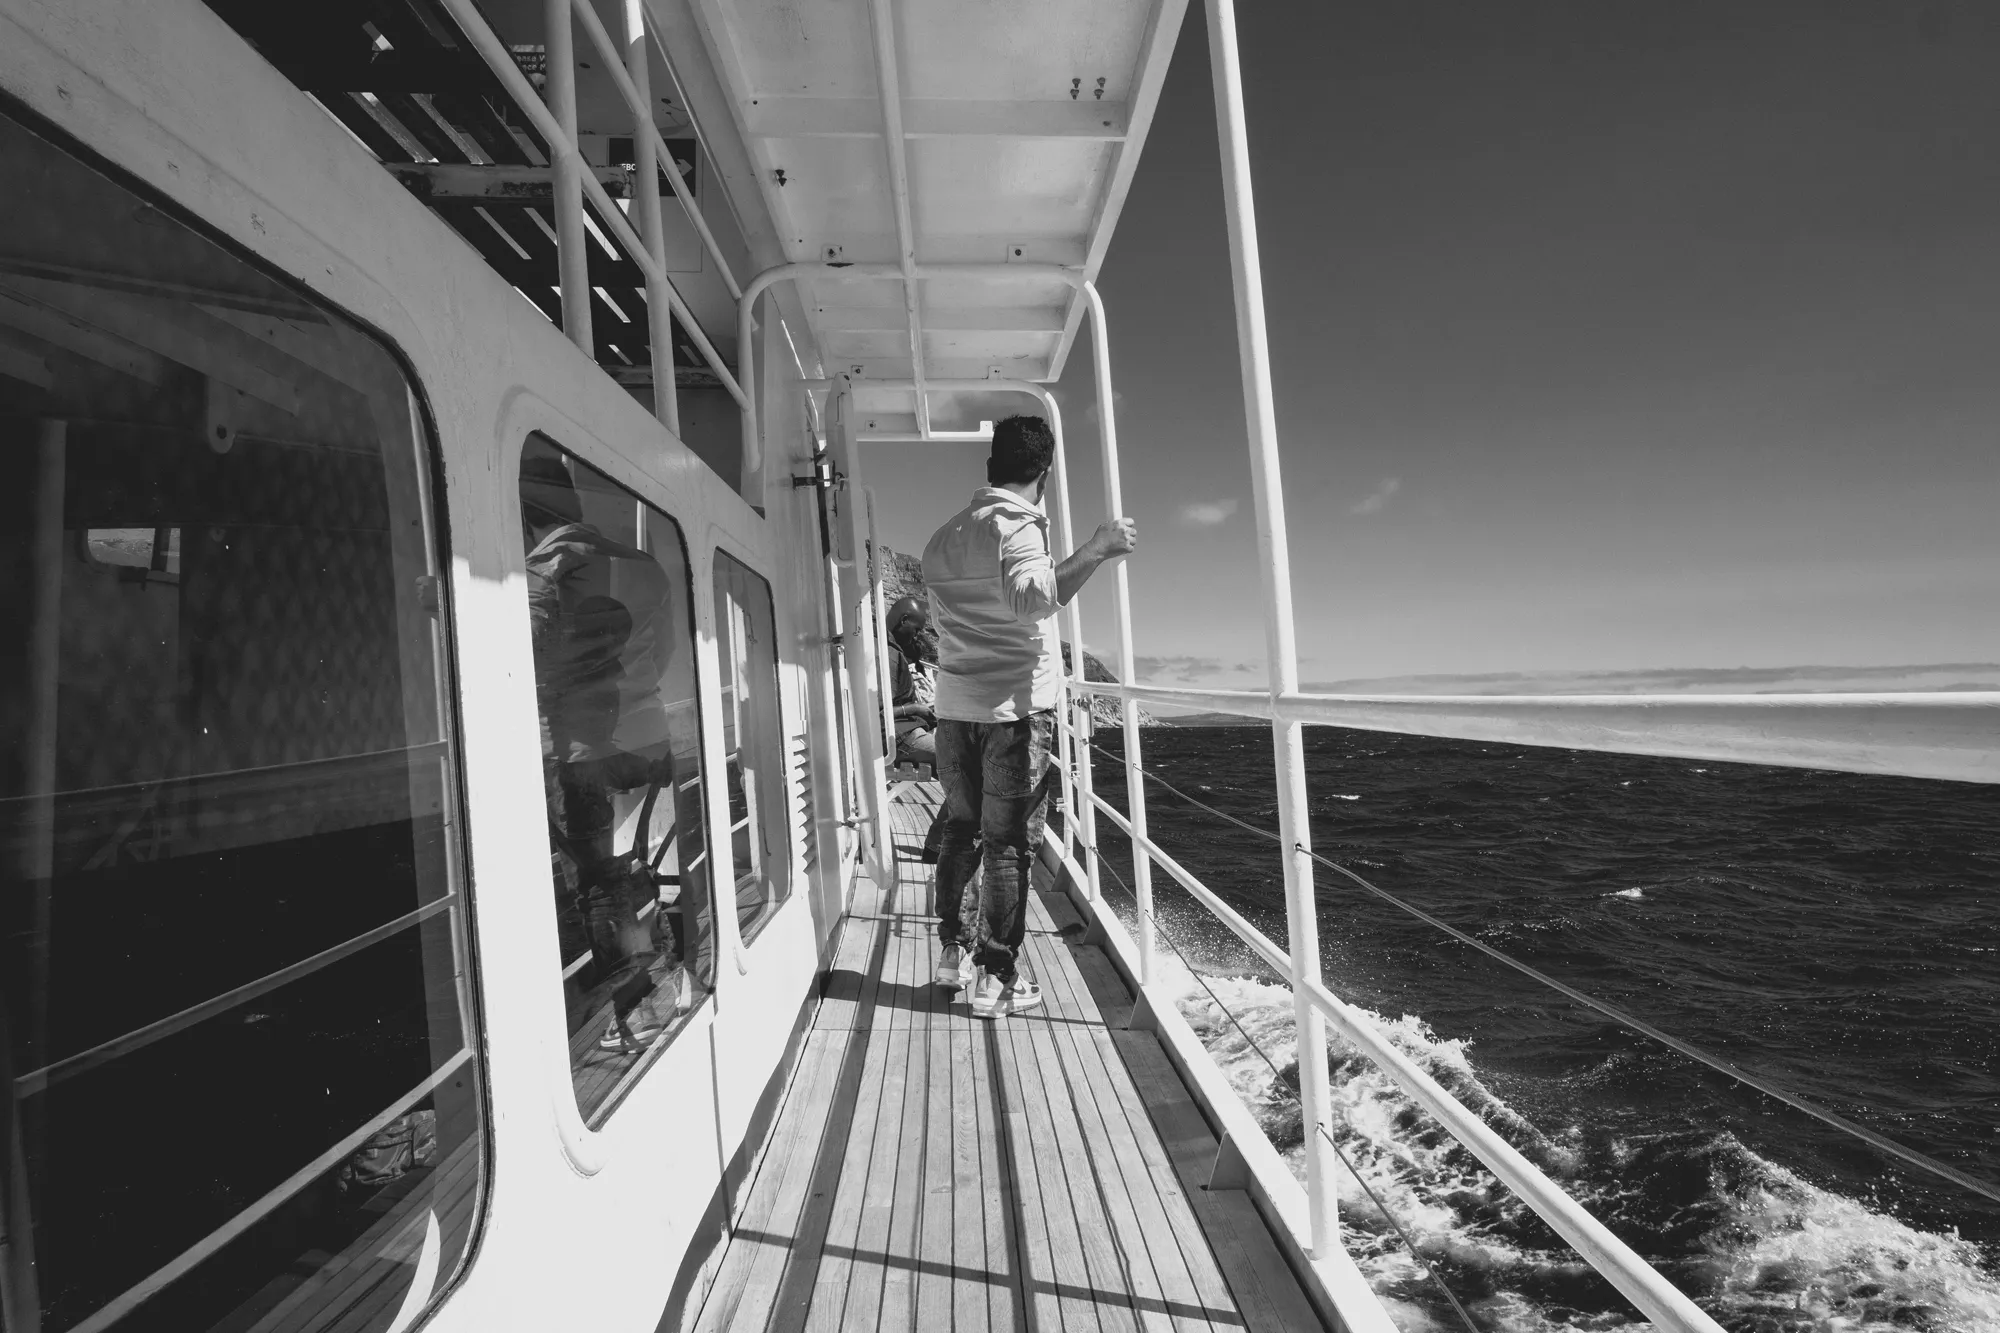 2022-02-13 - Cape Town - Man walks on walkway on boat beside the ocean